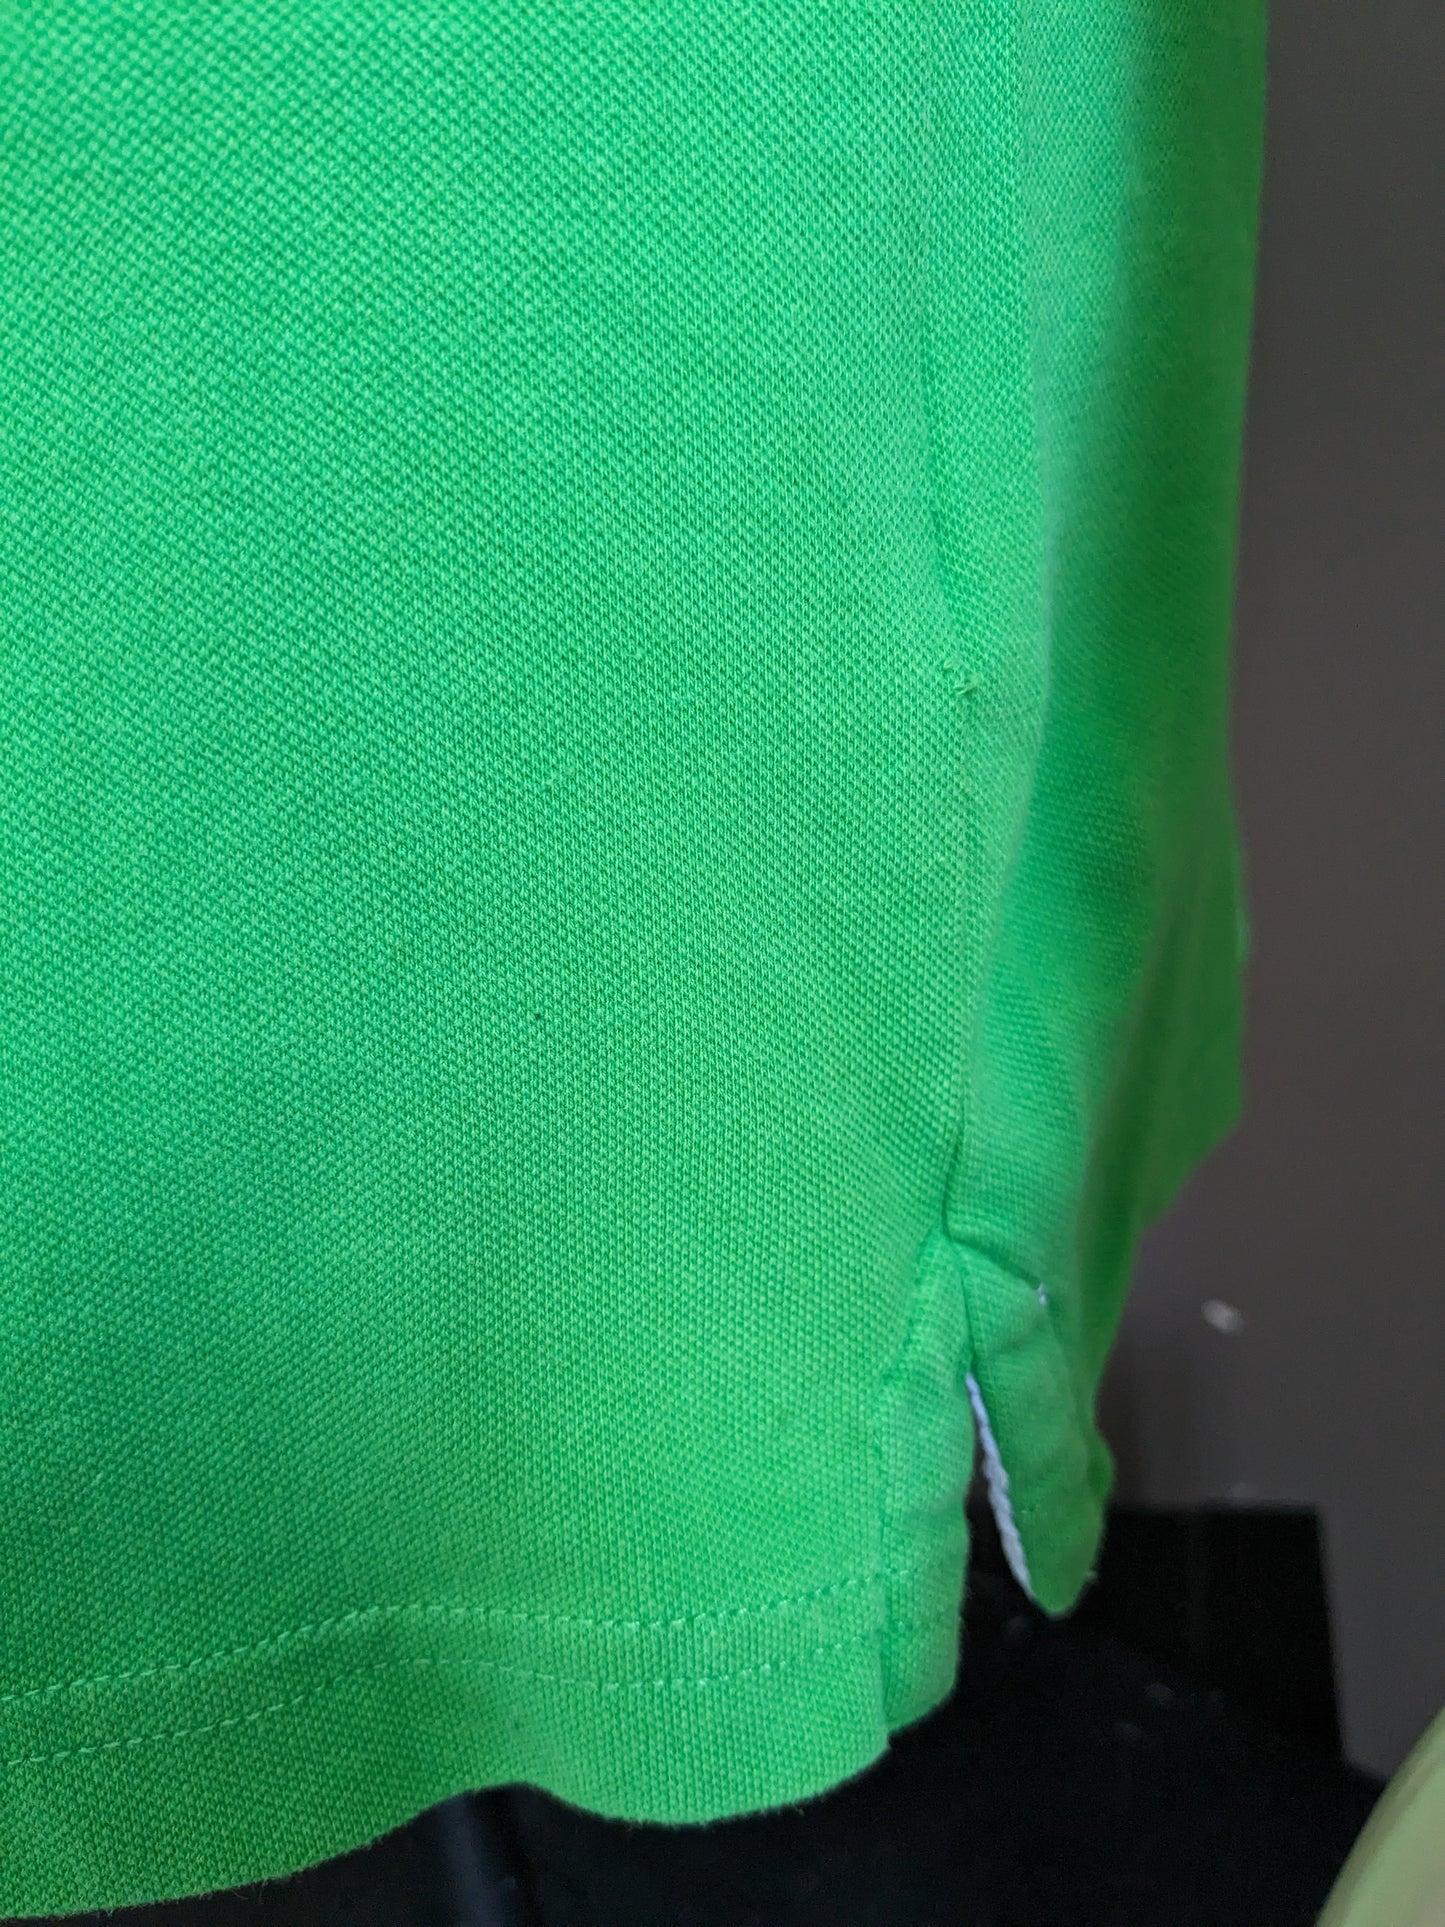 Polo Kangol vintage. Vert coloré, avec des accents rayés colorés. Taille L.